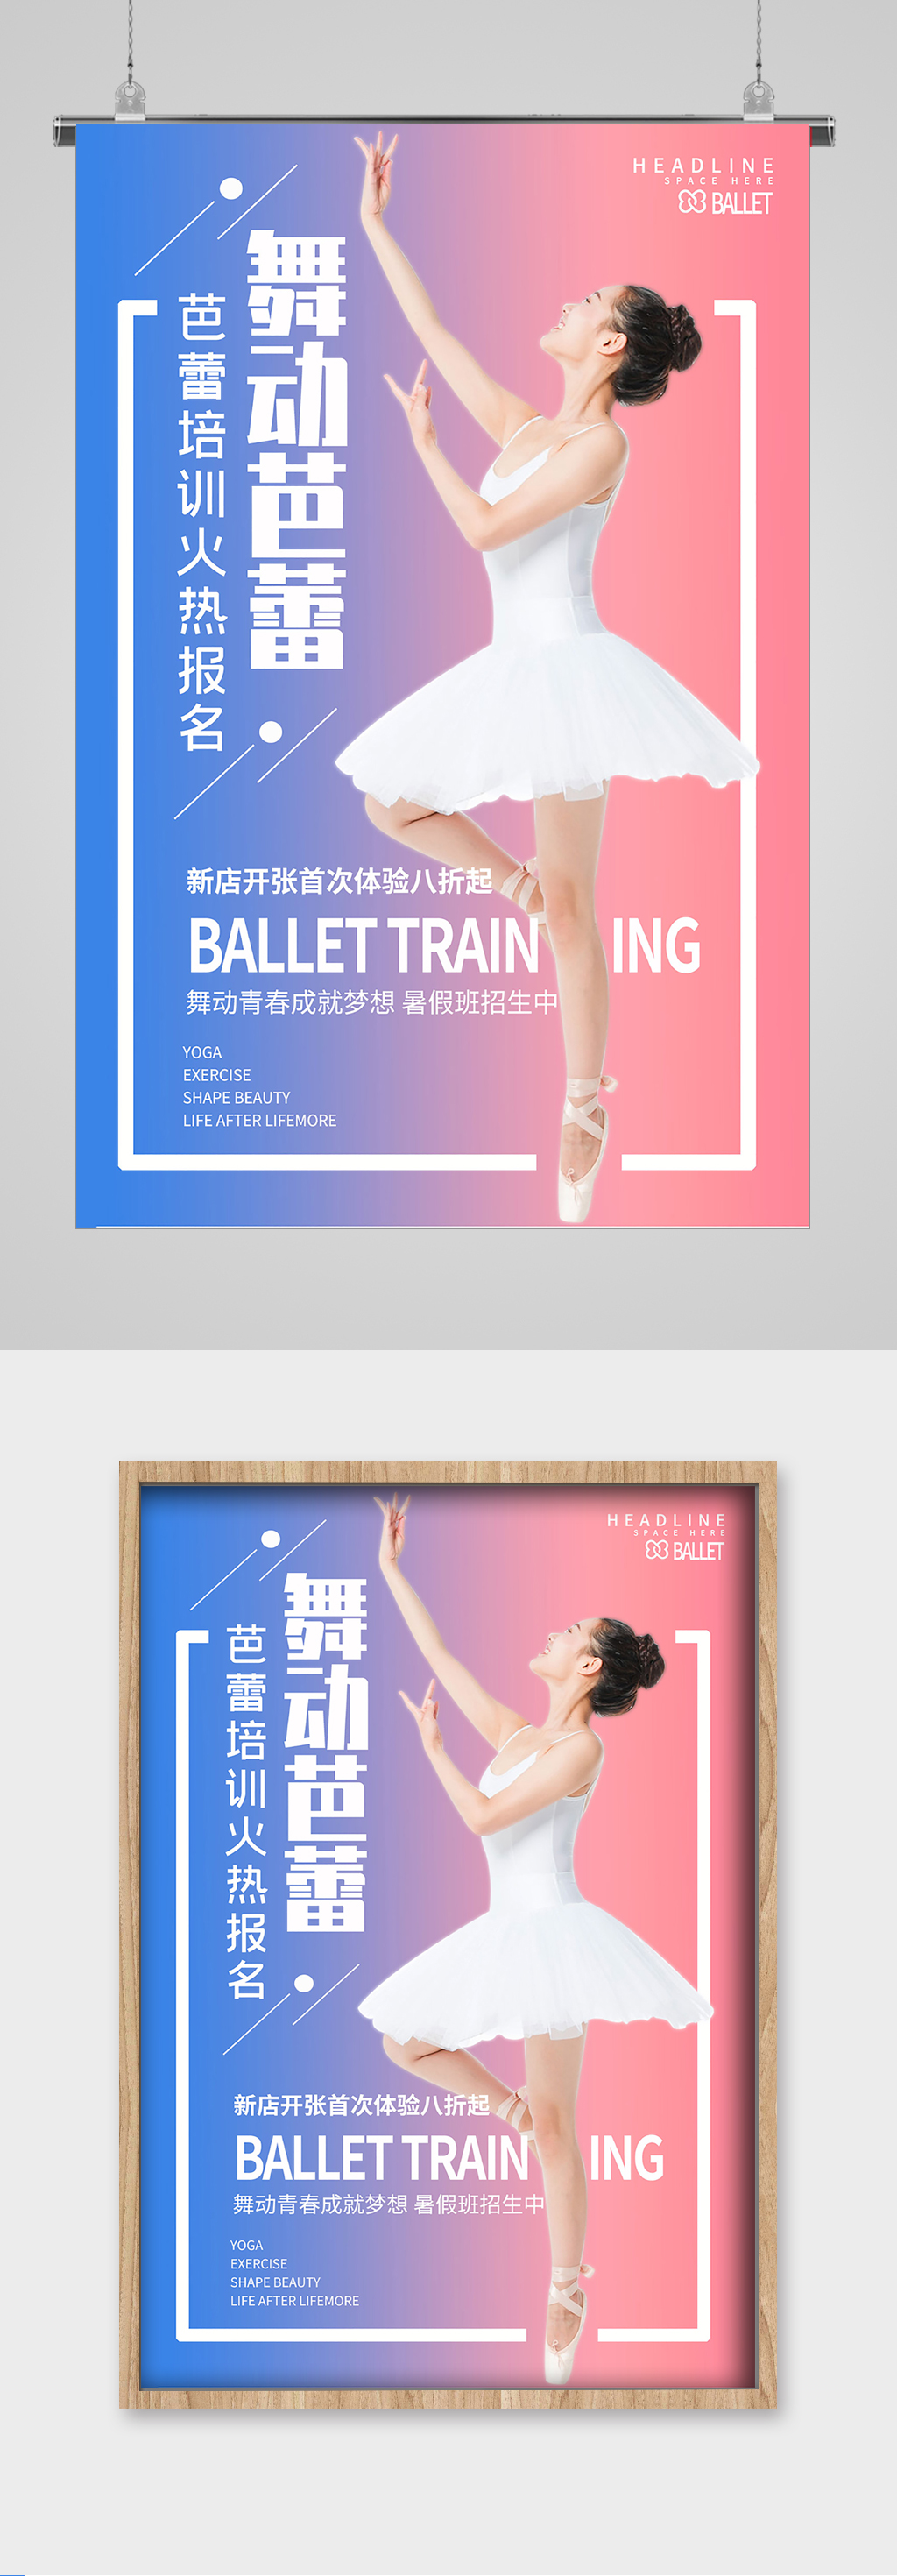 芭蕾舞蹈培训招生宣传海报